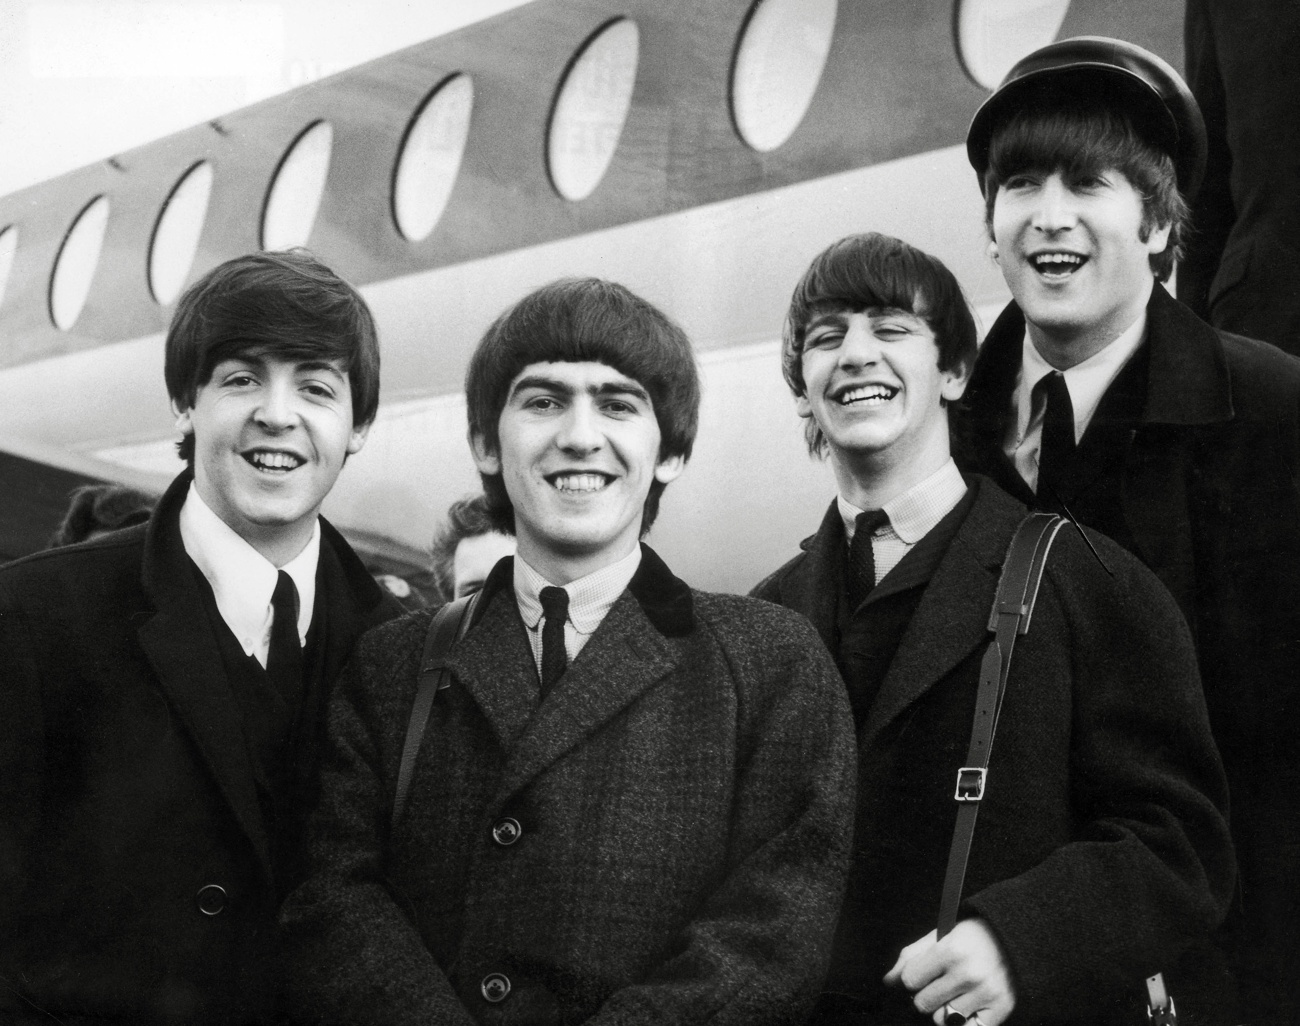 53 Jahre seit der Trennung der Beatles